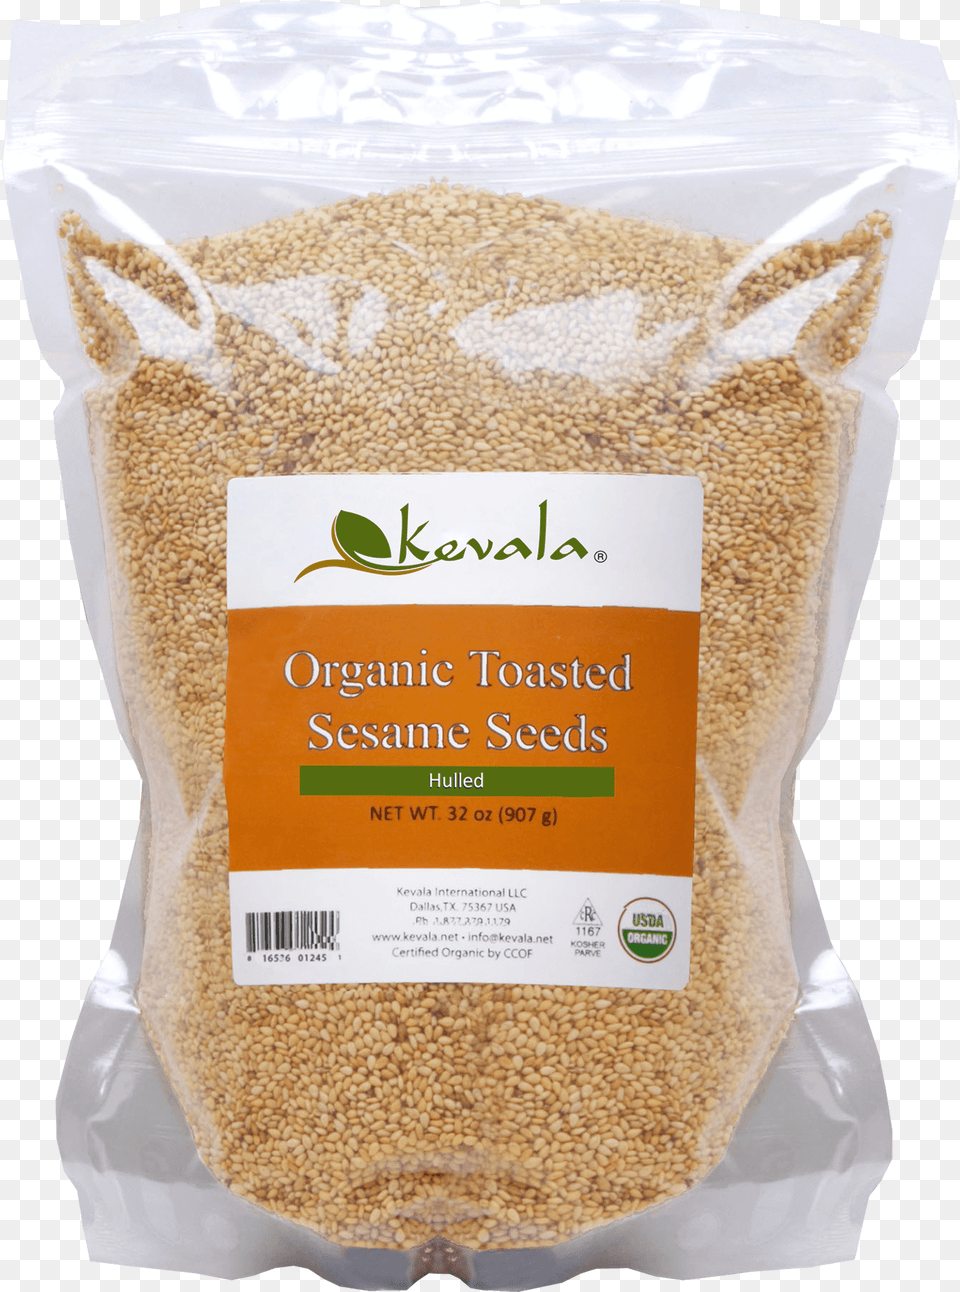 Organic Toasted Sesame Seeds 32 Oz Kevala Organic Toasted Sesame Seeds 16 Oz, Food, Produce, Business Card, Paper Free Png Download